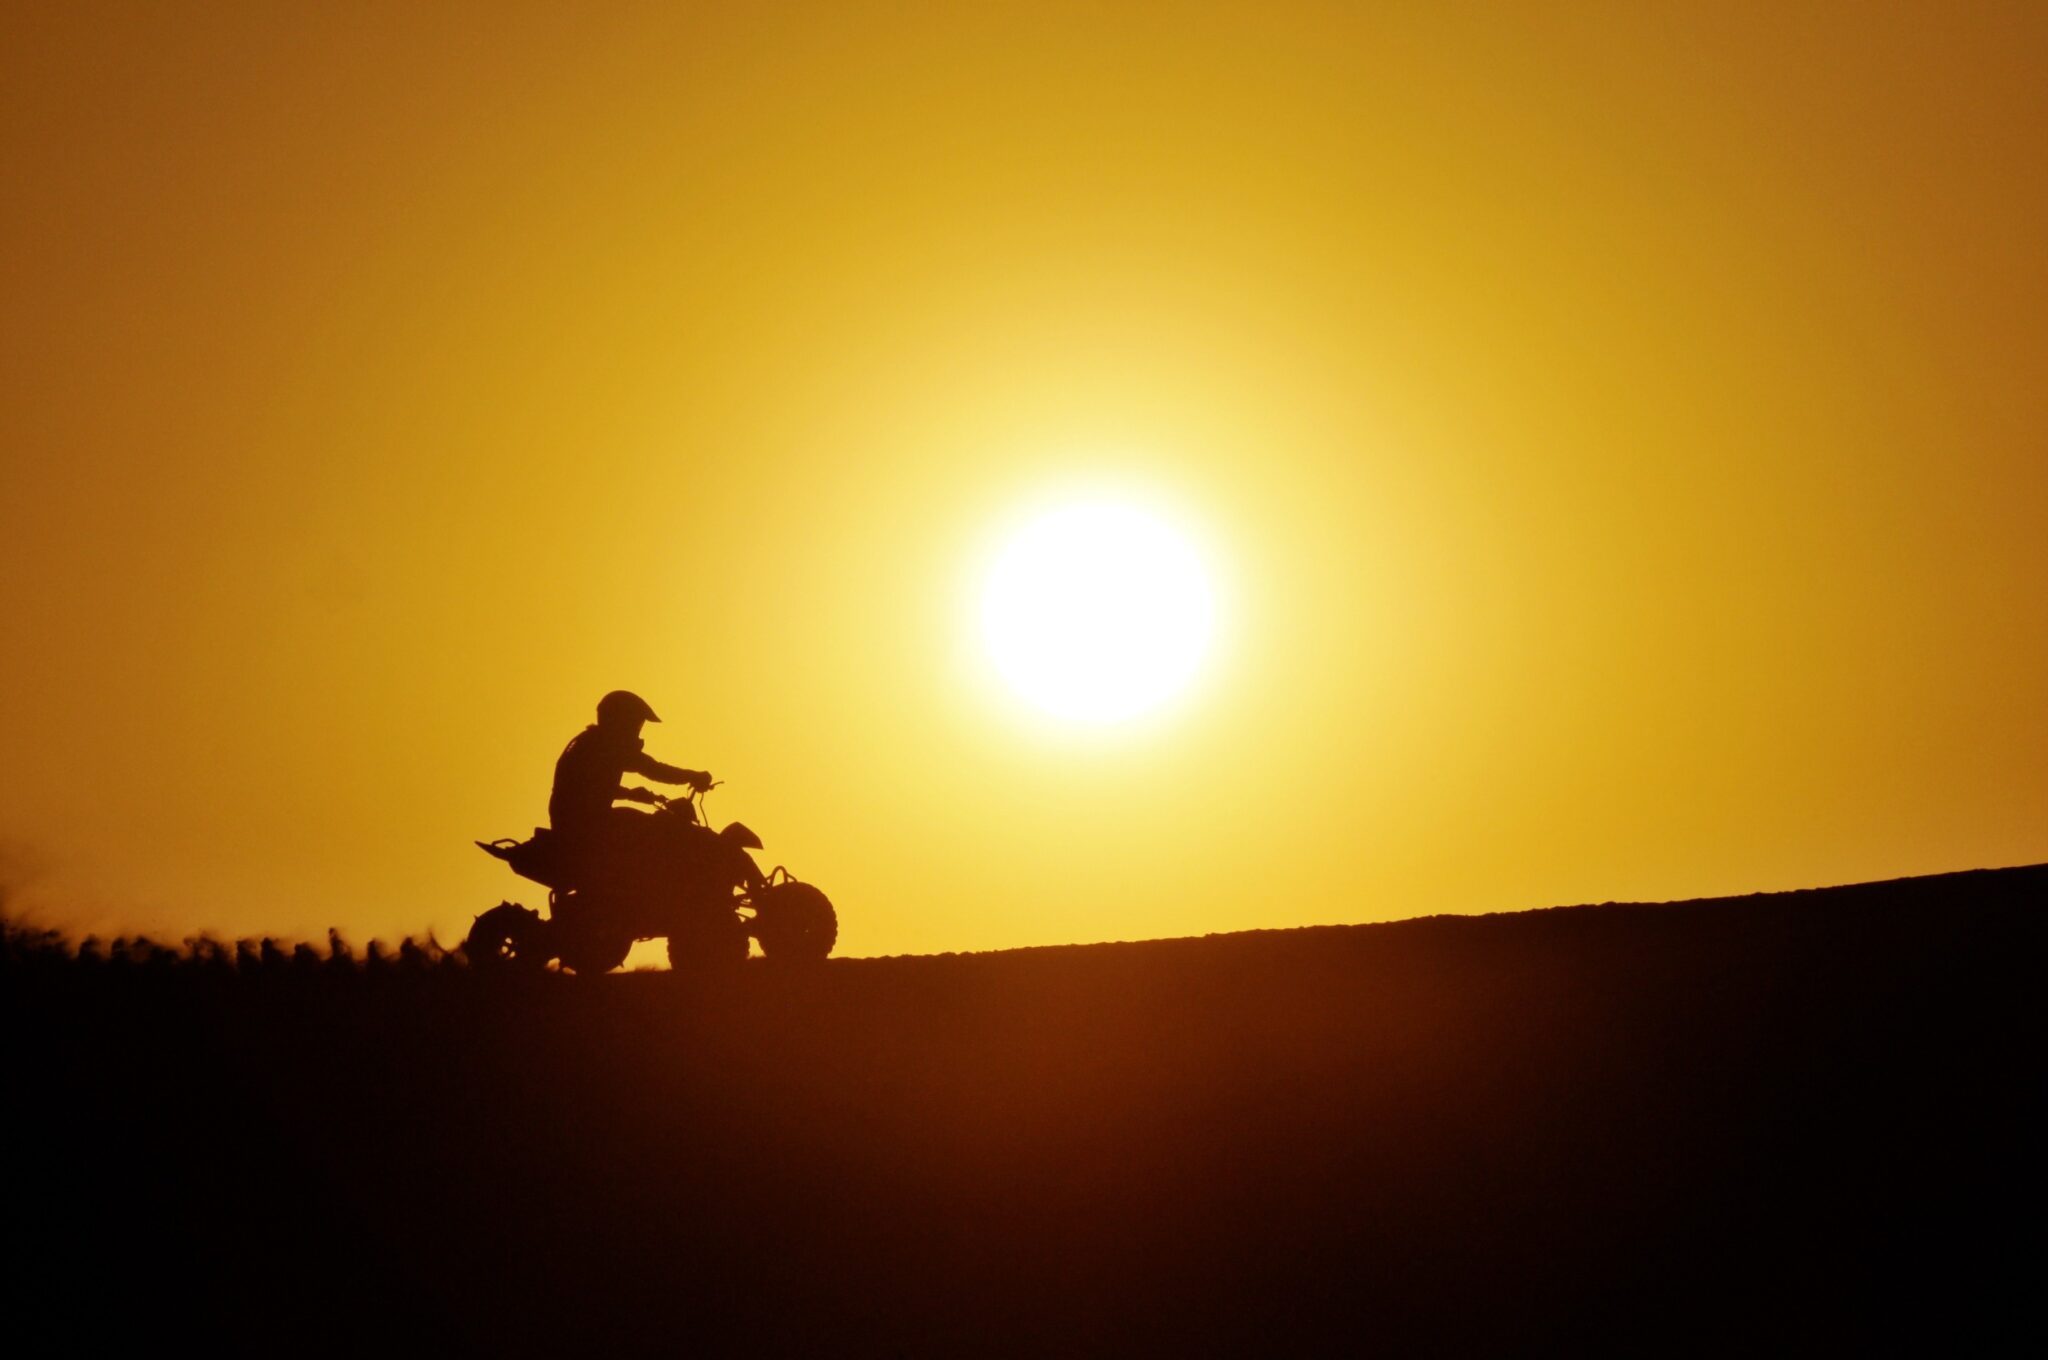 un personne conduit un quad sur une colline avec un coucher de soleil en fond